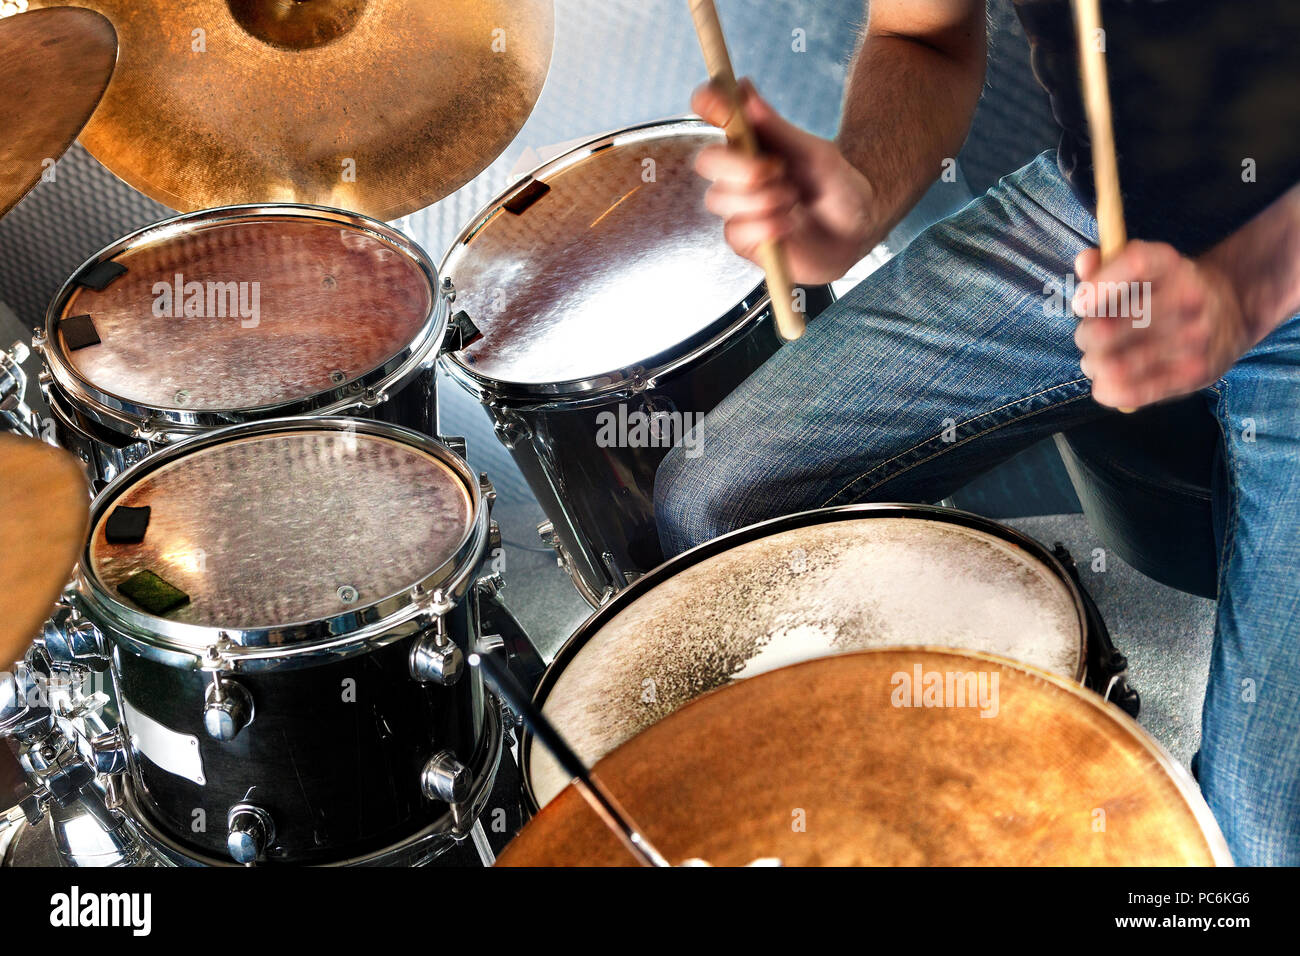 Schlagzeuger spielen Das drumset. Musik und Unterhaltung Konzept.  Percussion Sound Aufzeichnung im Studio. Musik Band und Musiker auf der  Bühne Stockfotografie - Alamy